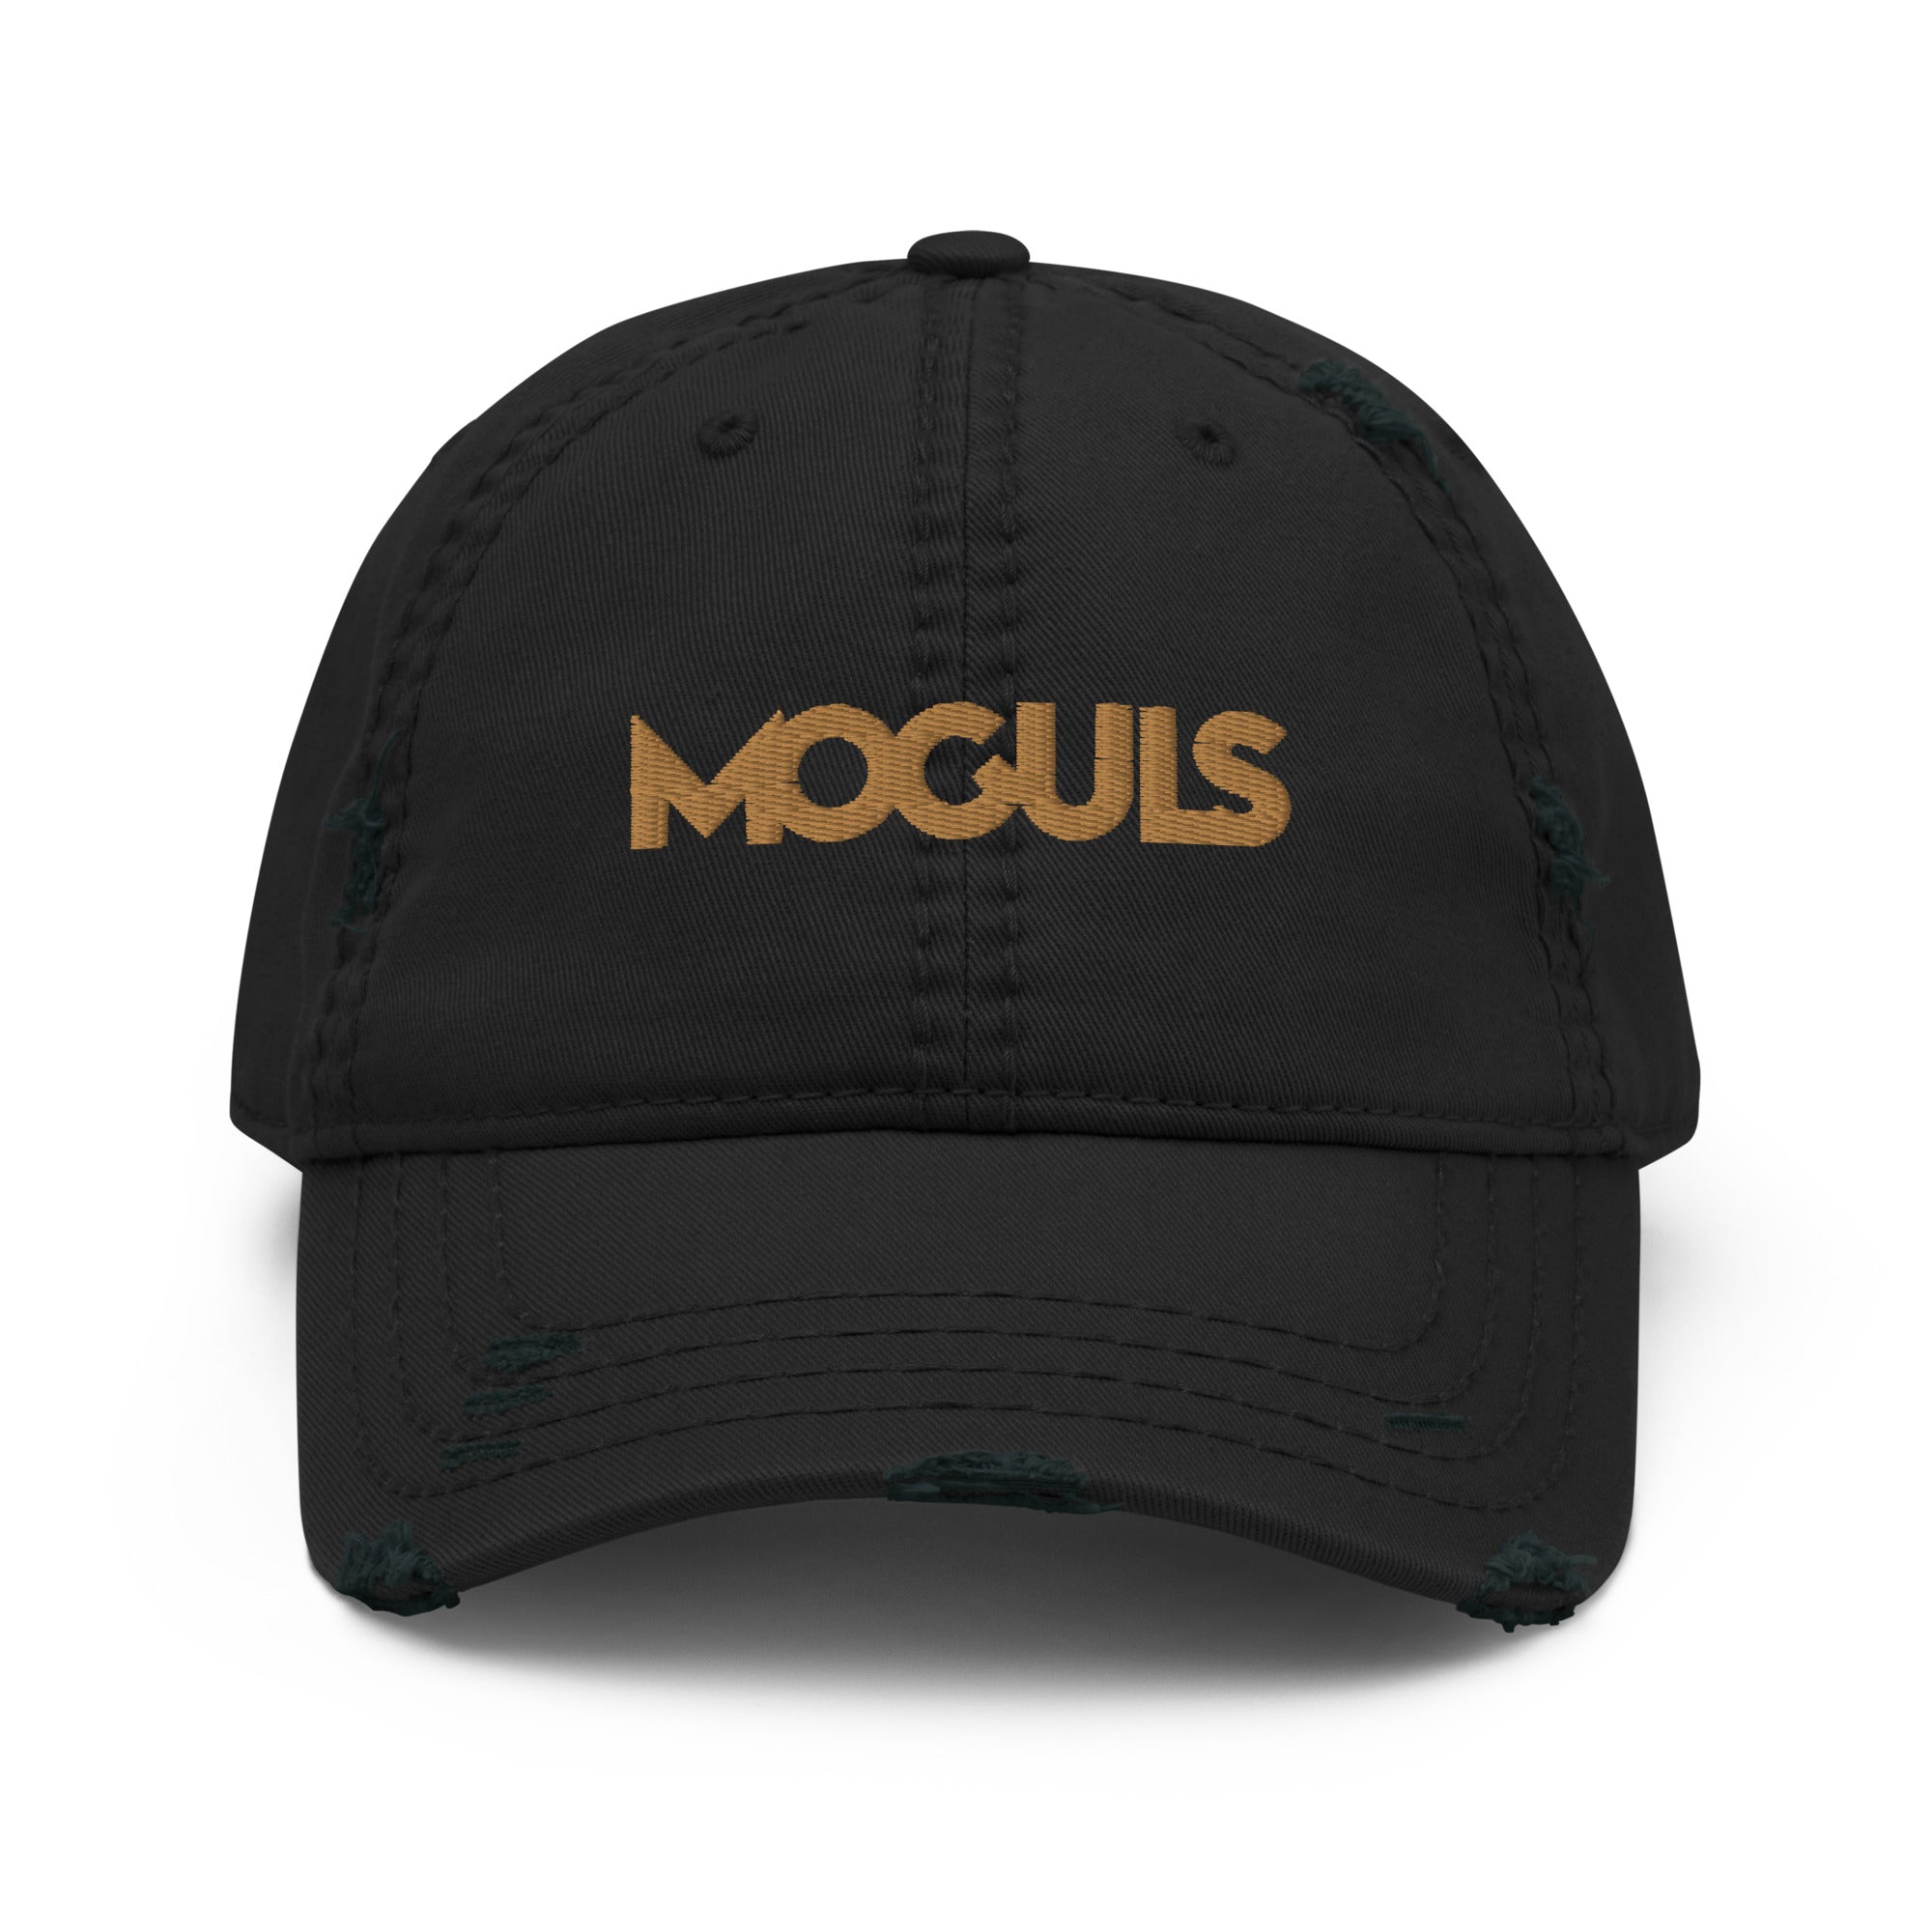 MOGULS Denim Hat